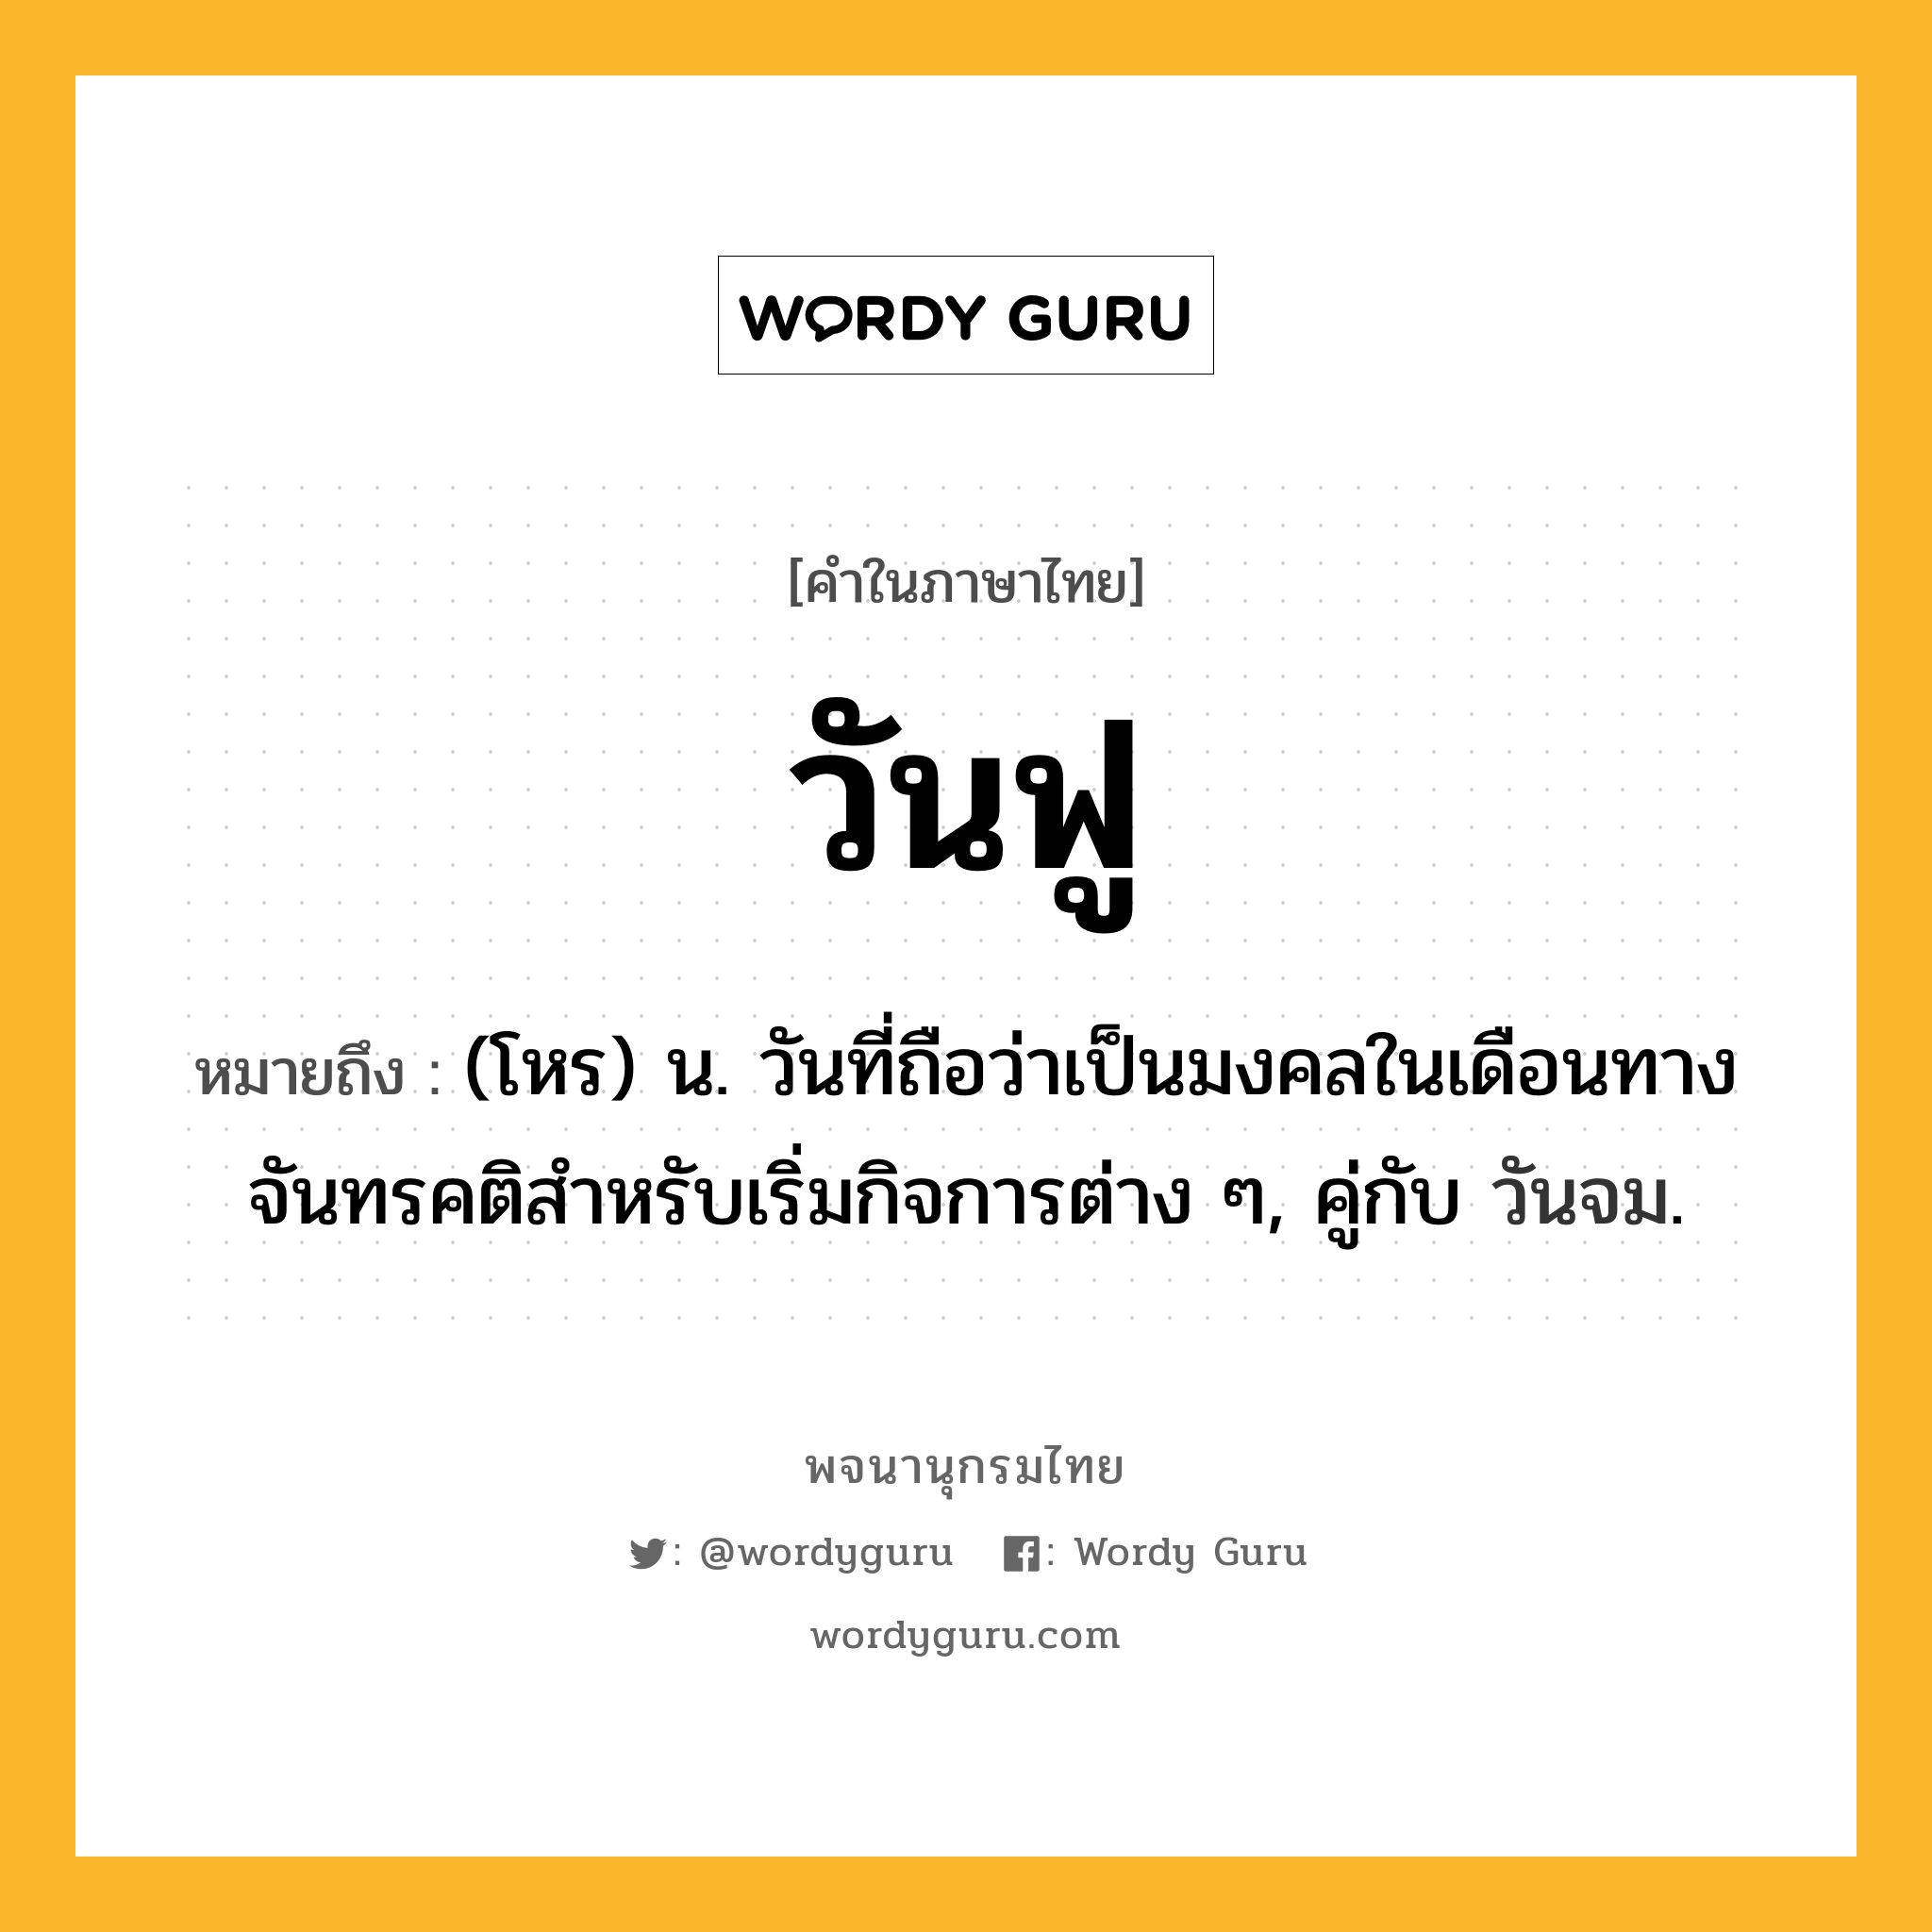 วันฟู ความหมาย หมายถึงอะไร?, คำในภาษาไทย วันฟู หมายถึง (โหร) น. วันที่ถือว่าเป็นมงคลในเดือนทางจันทรคติสําหรับเริ่มกิจการต่าง ๆ, คู่กับ วันจม.